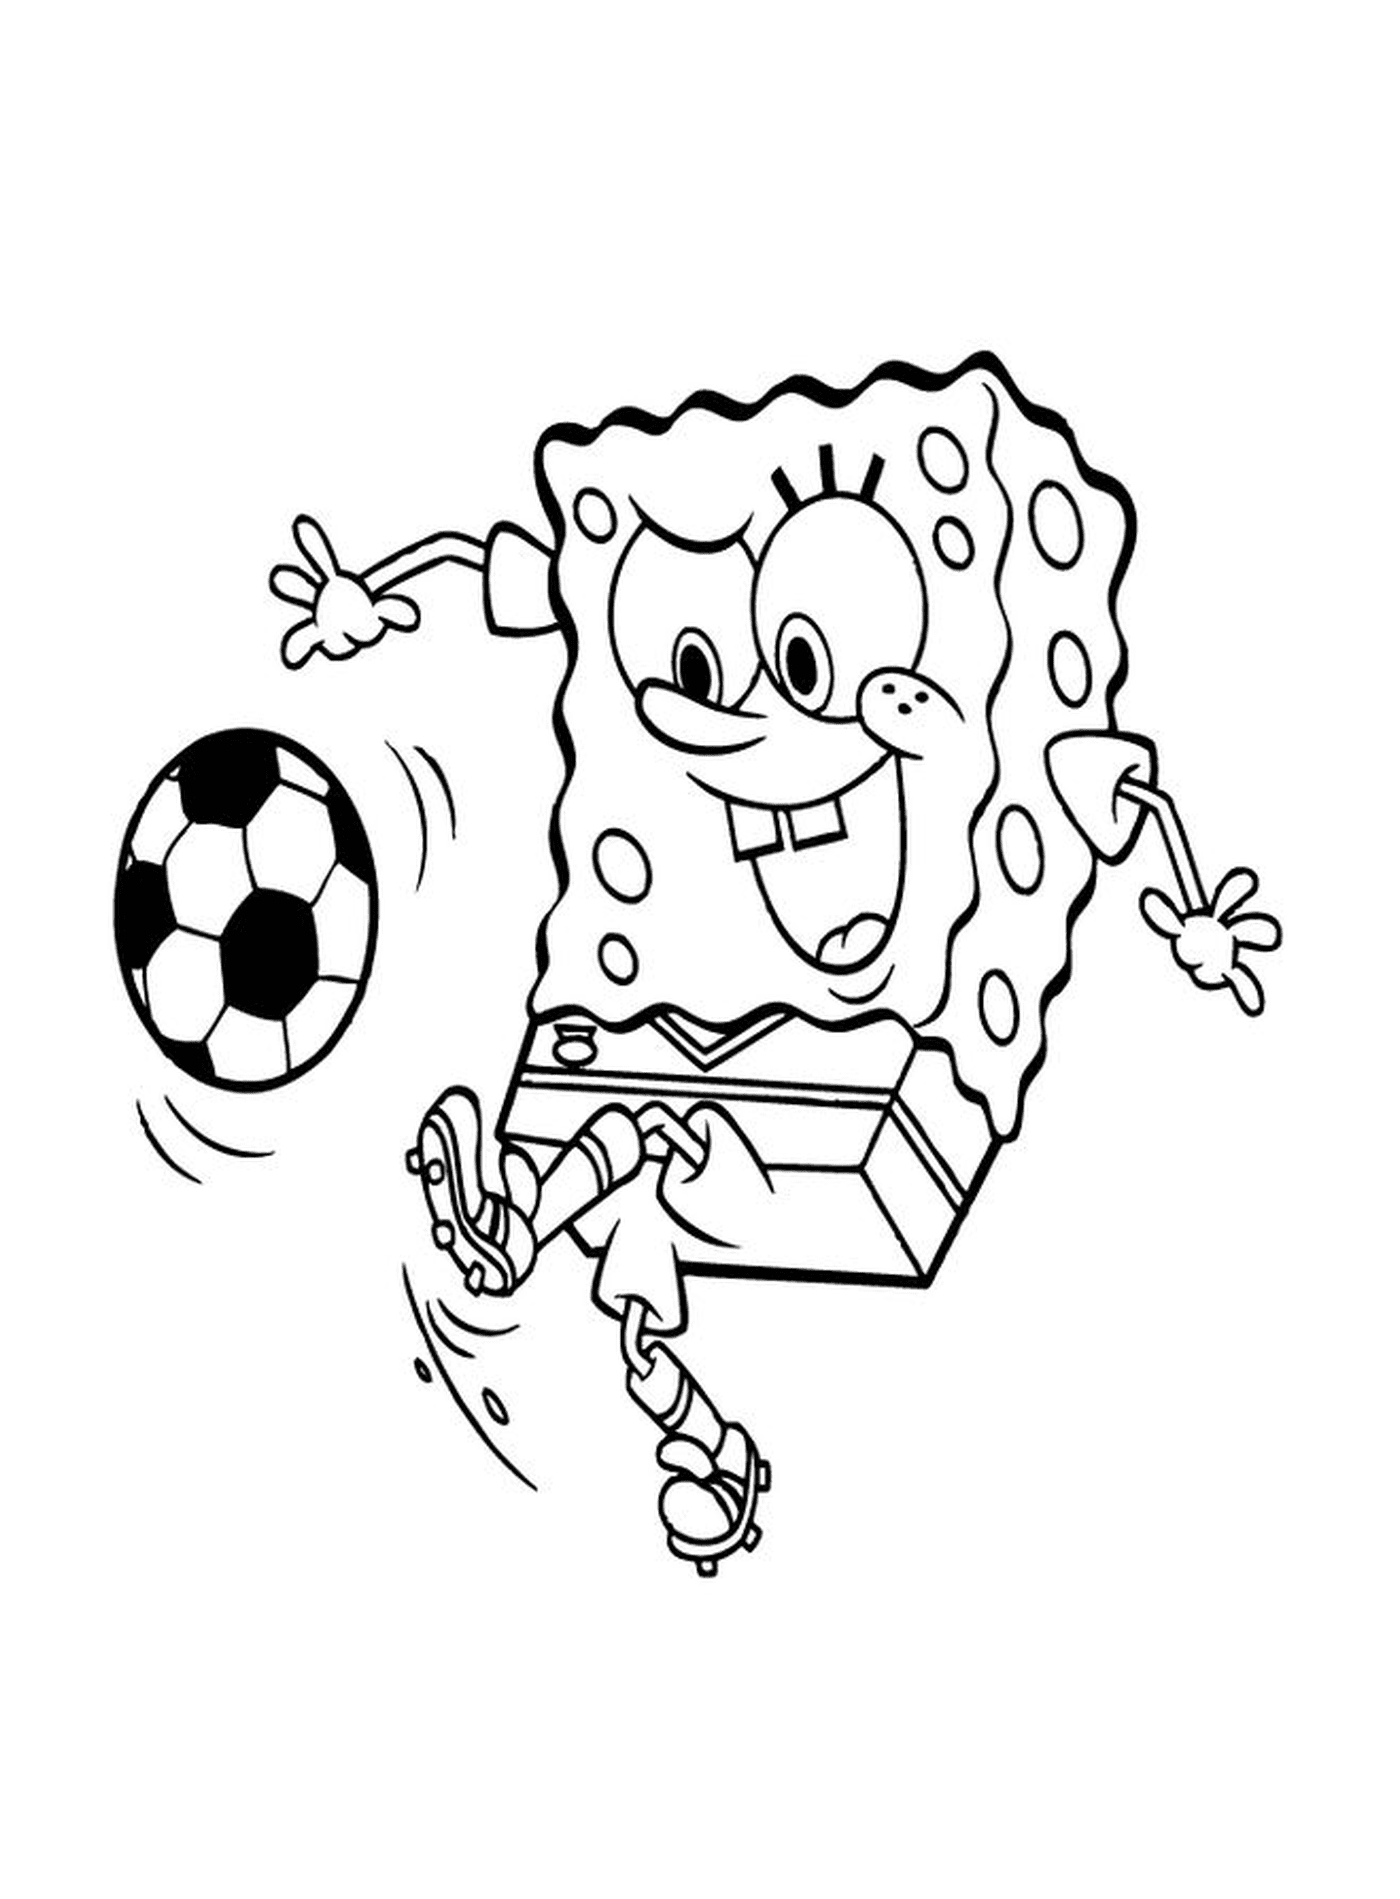  Spongebob gioca a calcio 